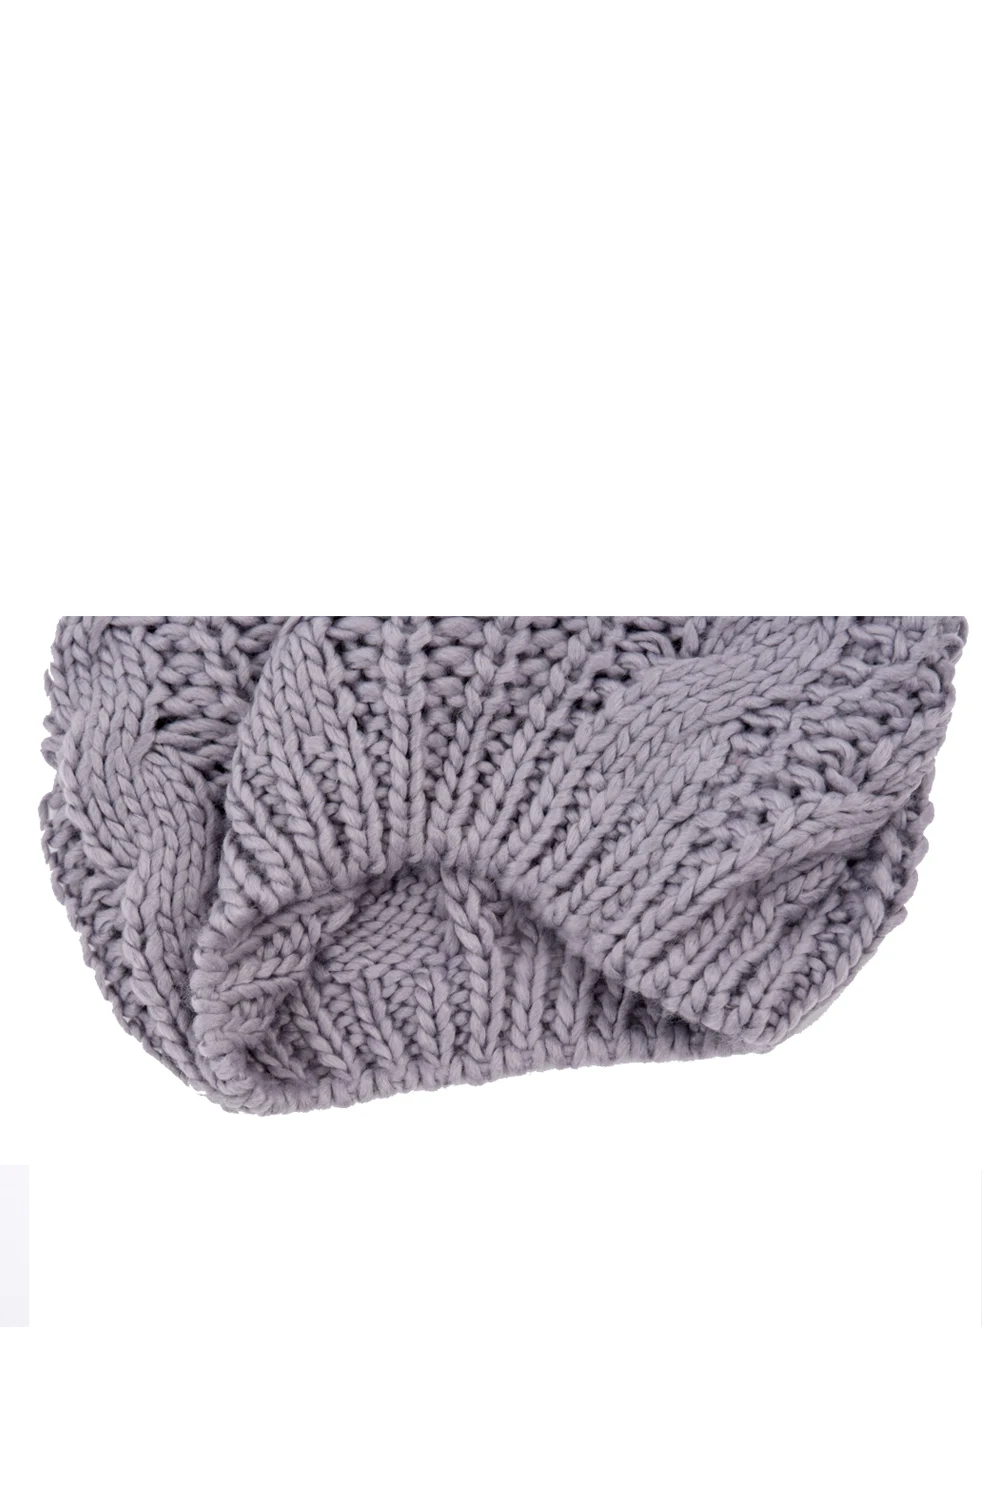 Горячие 10x плетеный мешок шапка Вязание крючком Теплые, зимние, шерстяные Лыжная Шапка Кепка для женщин